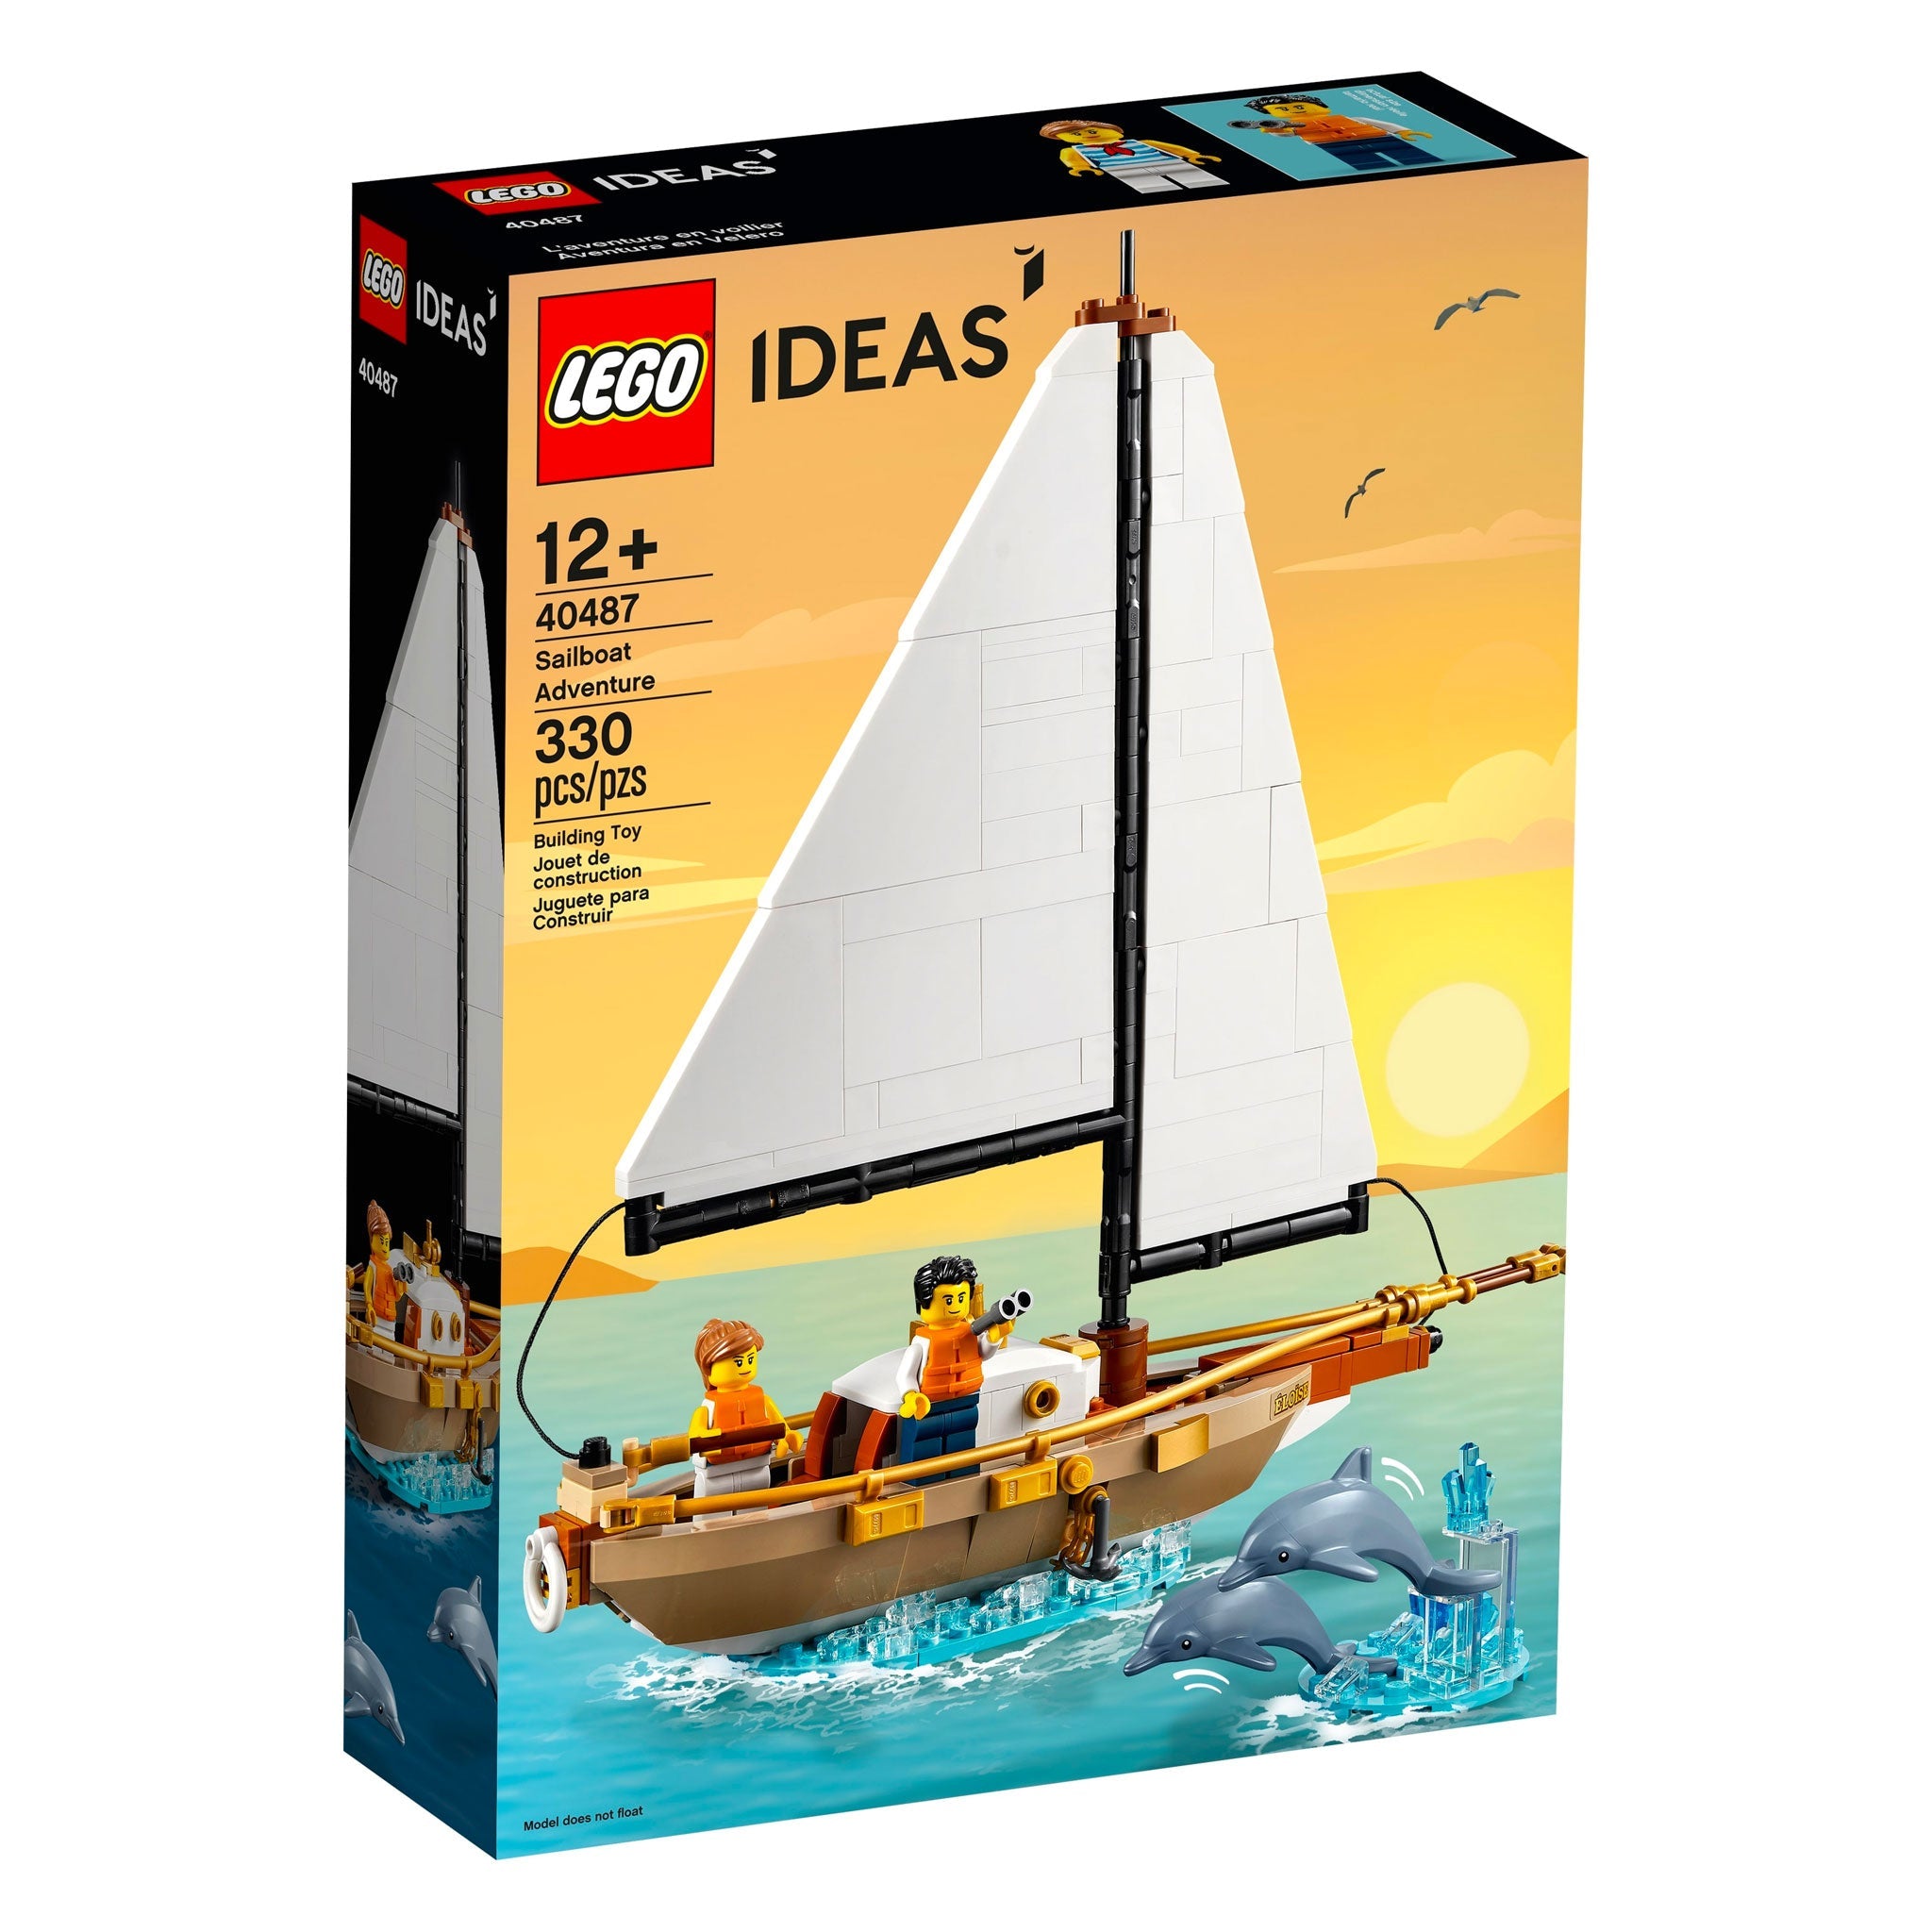 LEGO Ideas Segelabenteuer (40487) - im GOLDSTIEN.SHOP verfügbar mit Gratisversand ab Schweizer Lager! (5702016988451)